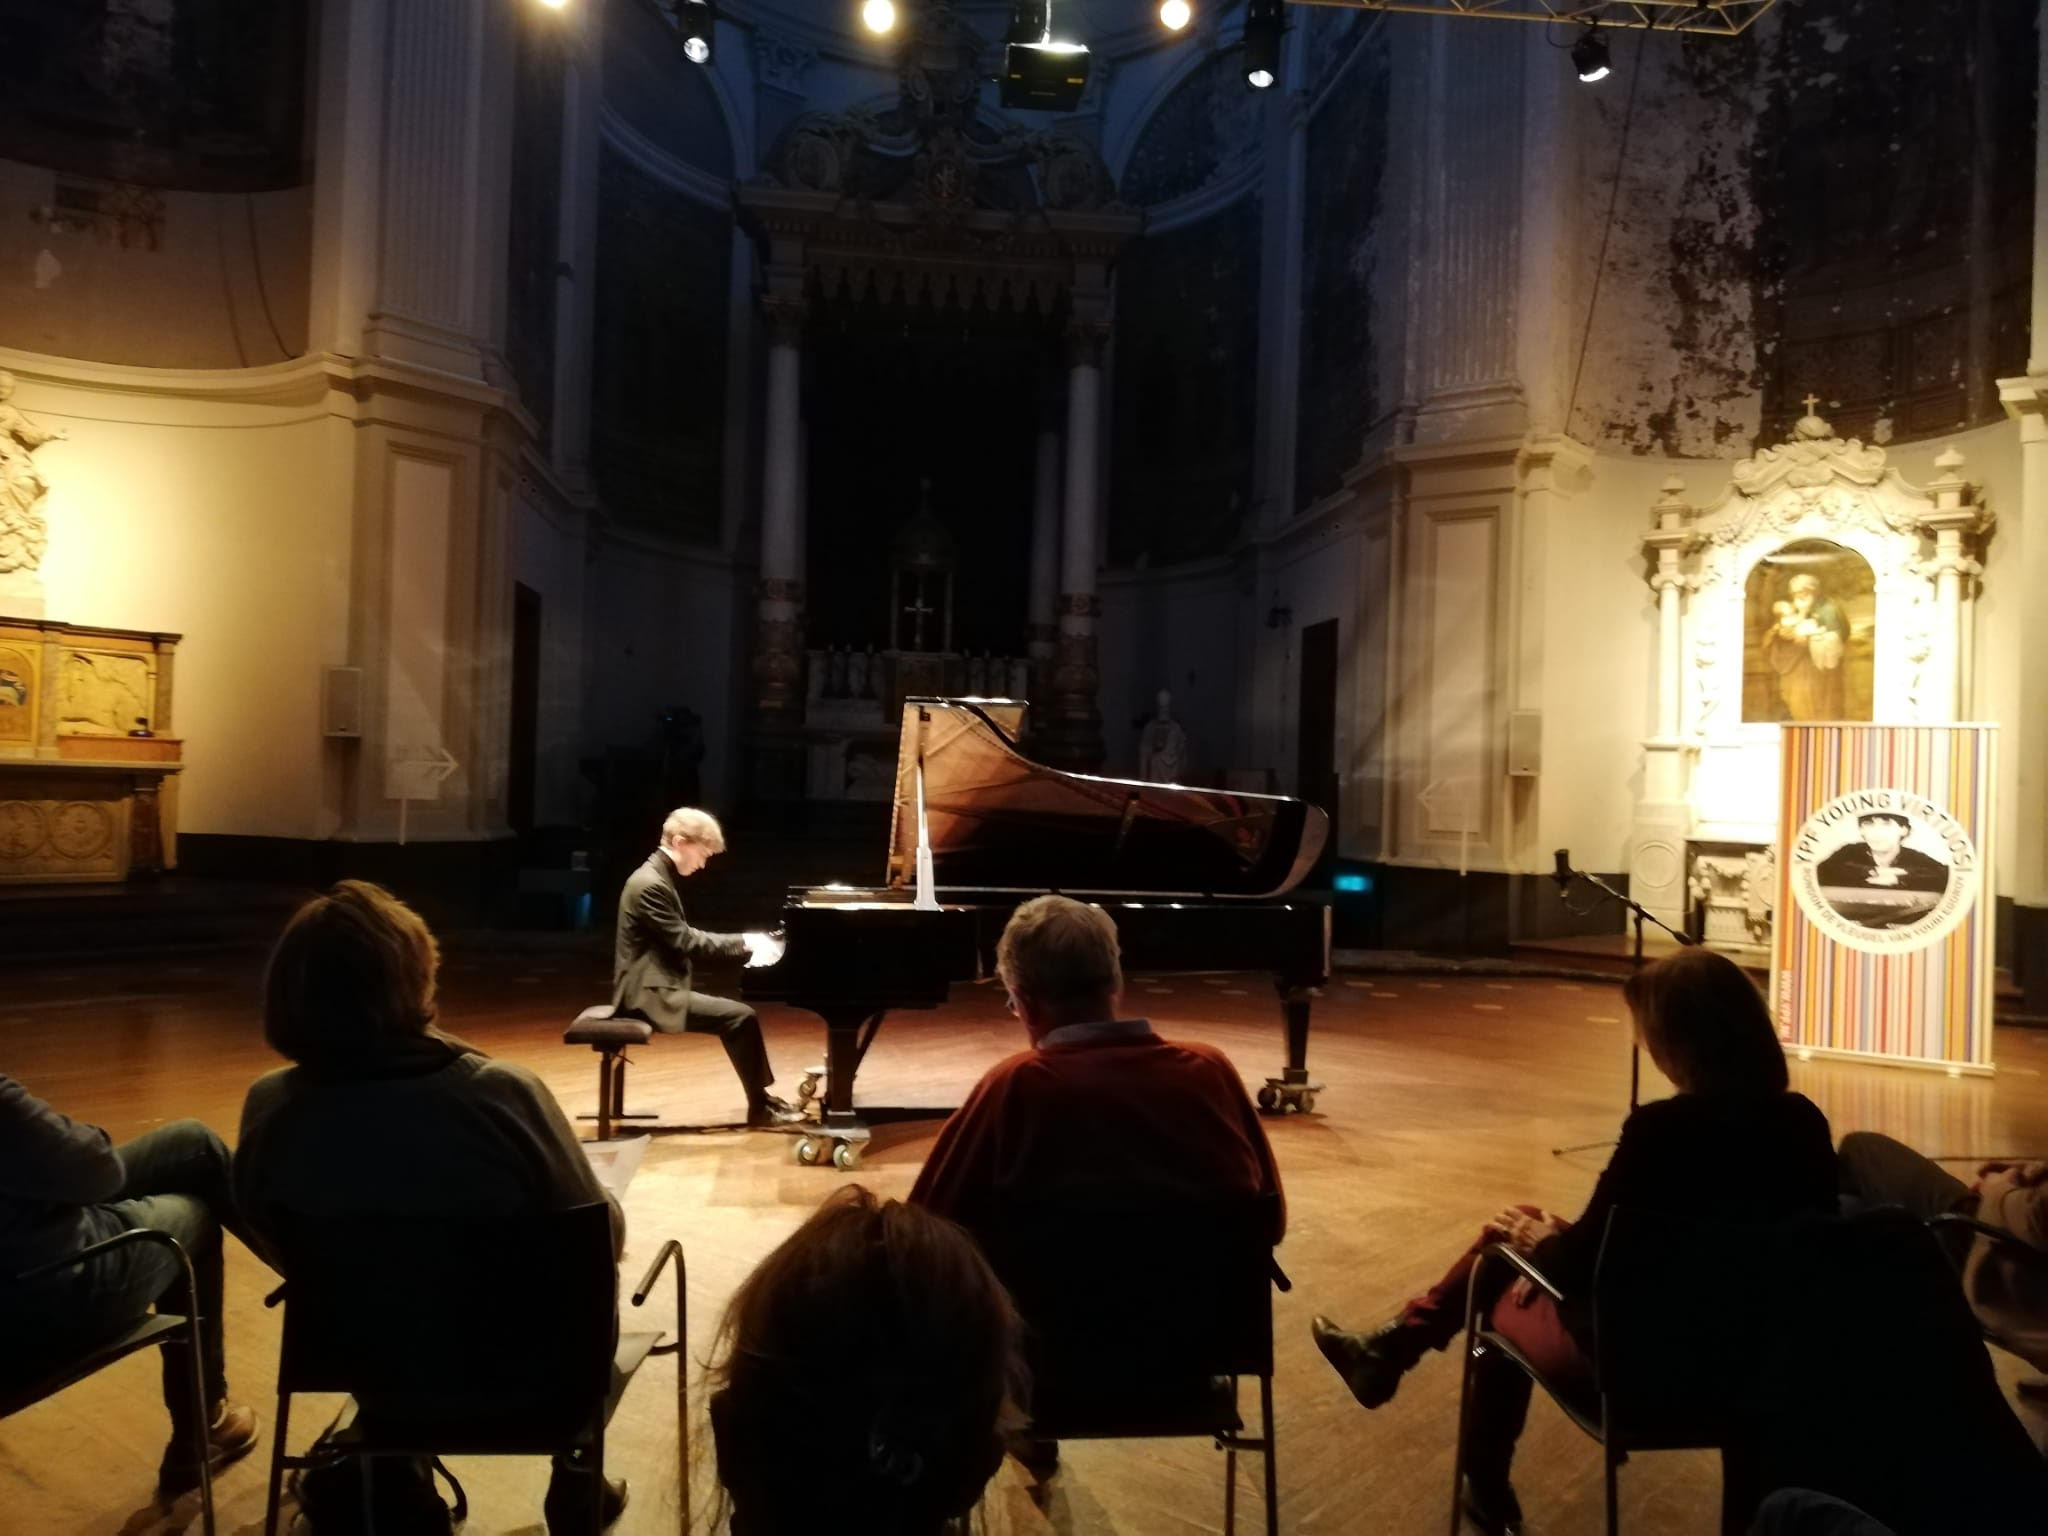 Shane van Neerden met prachtig intiem concert in De Duif